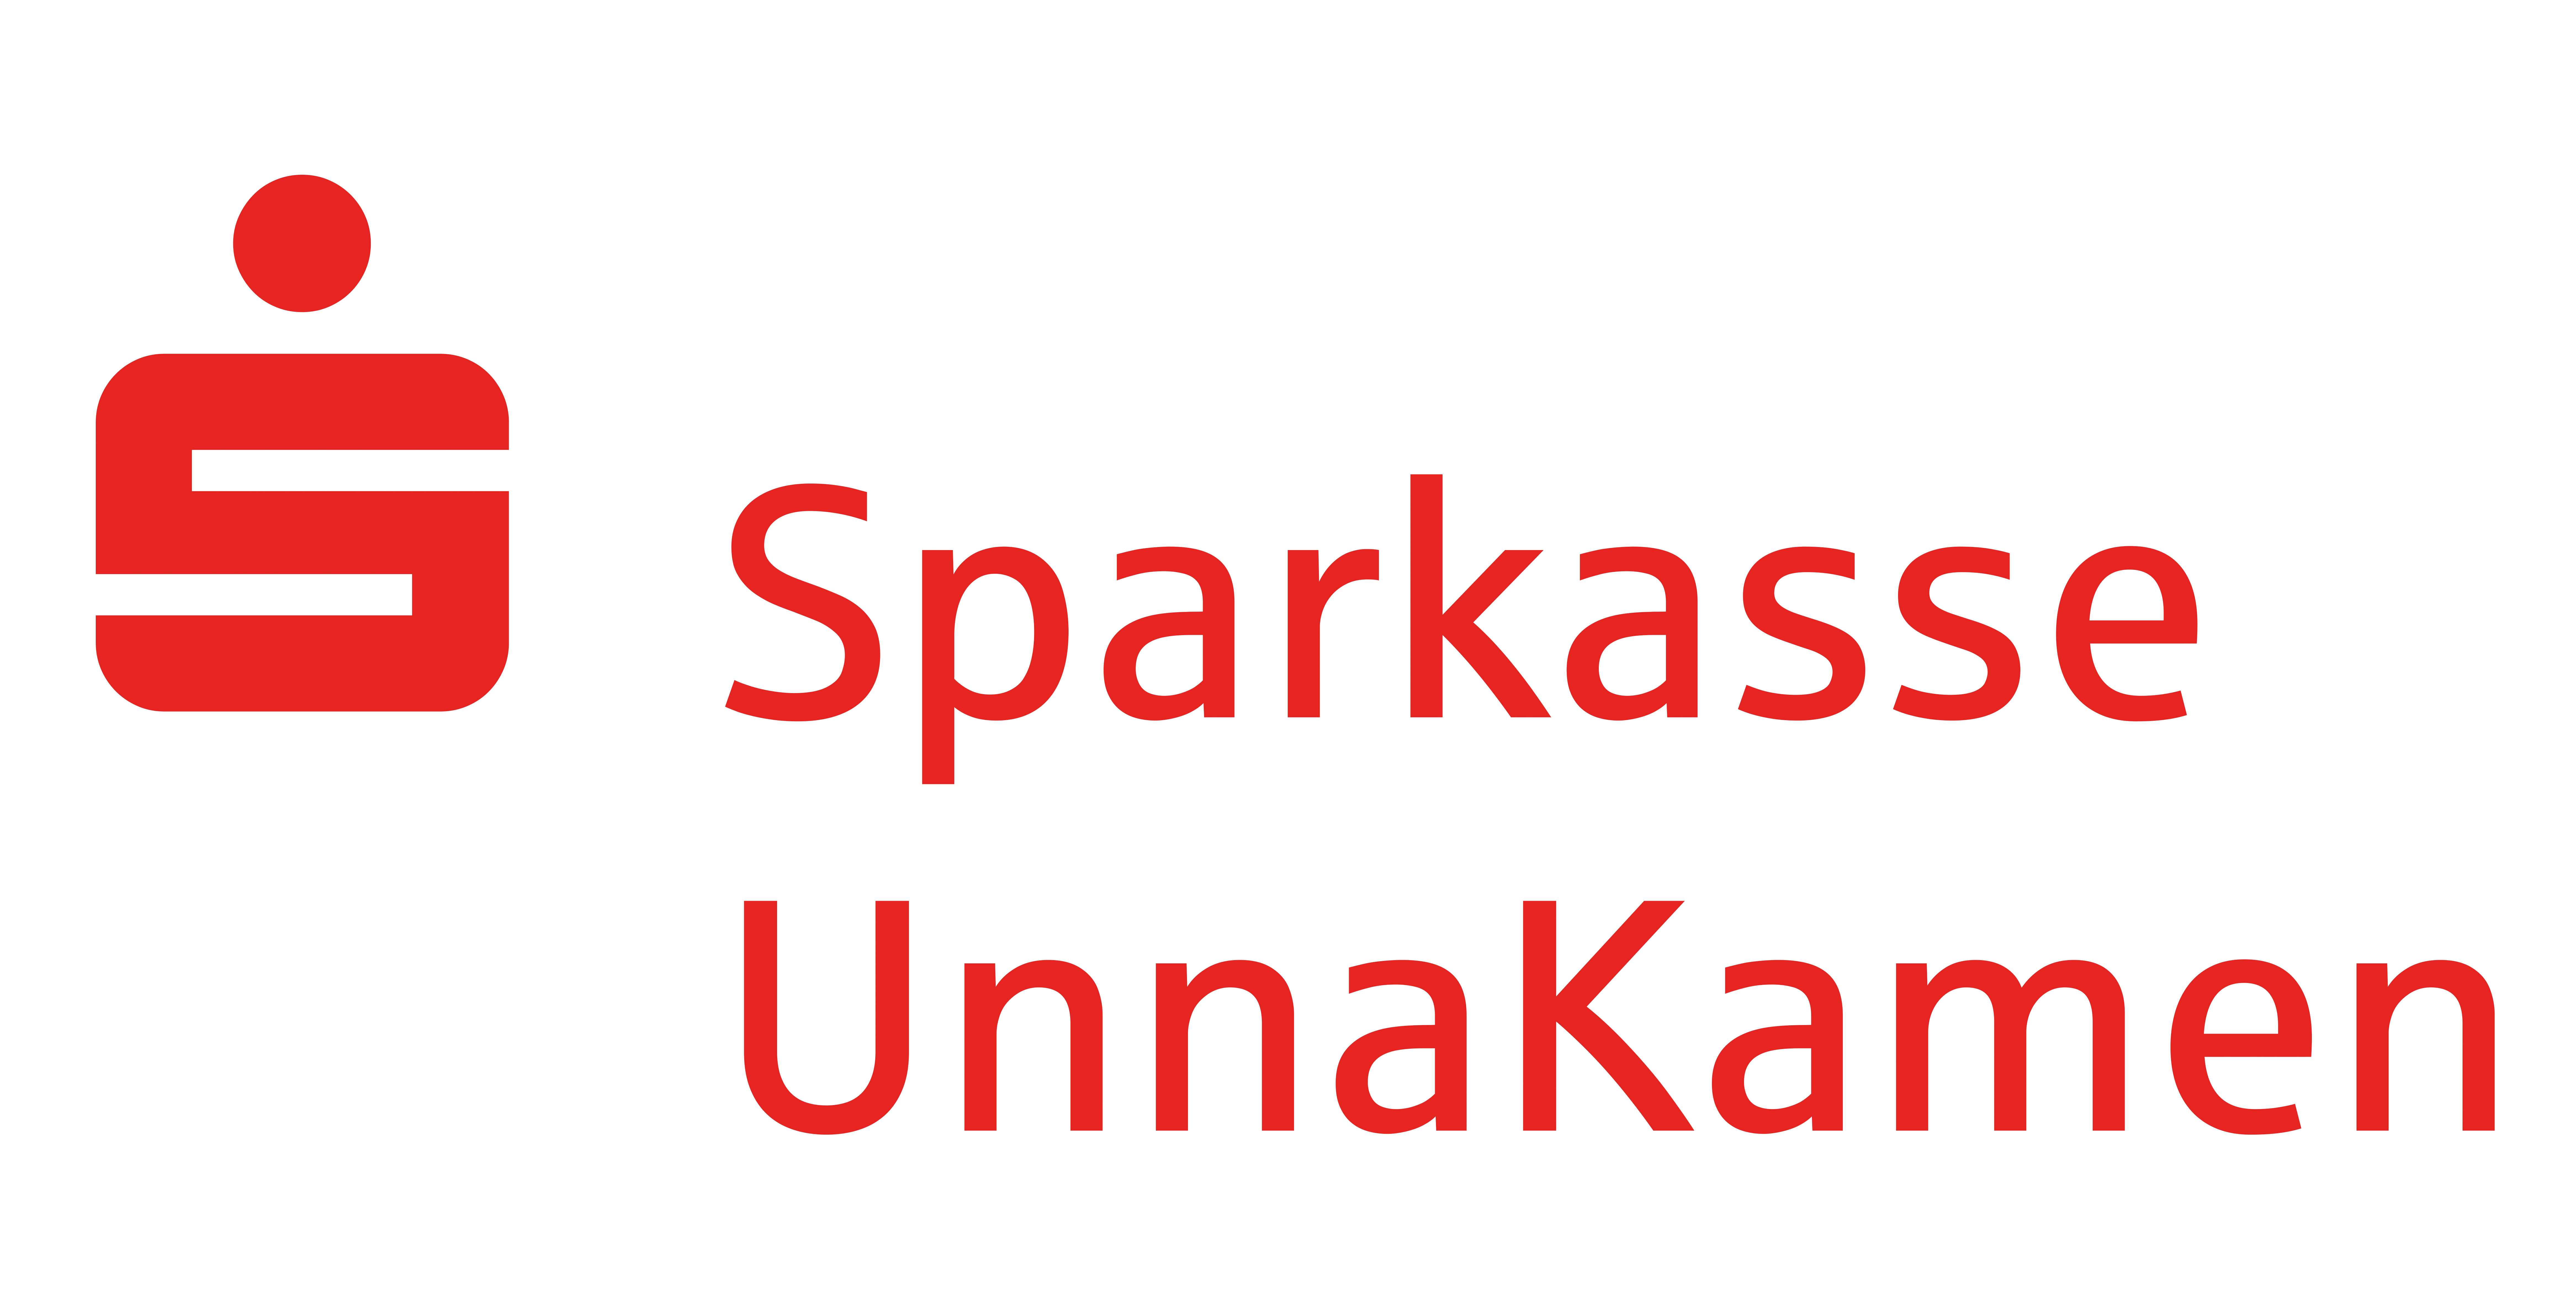 Sparkasse UnnaKamen Logo